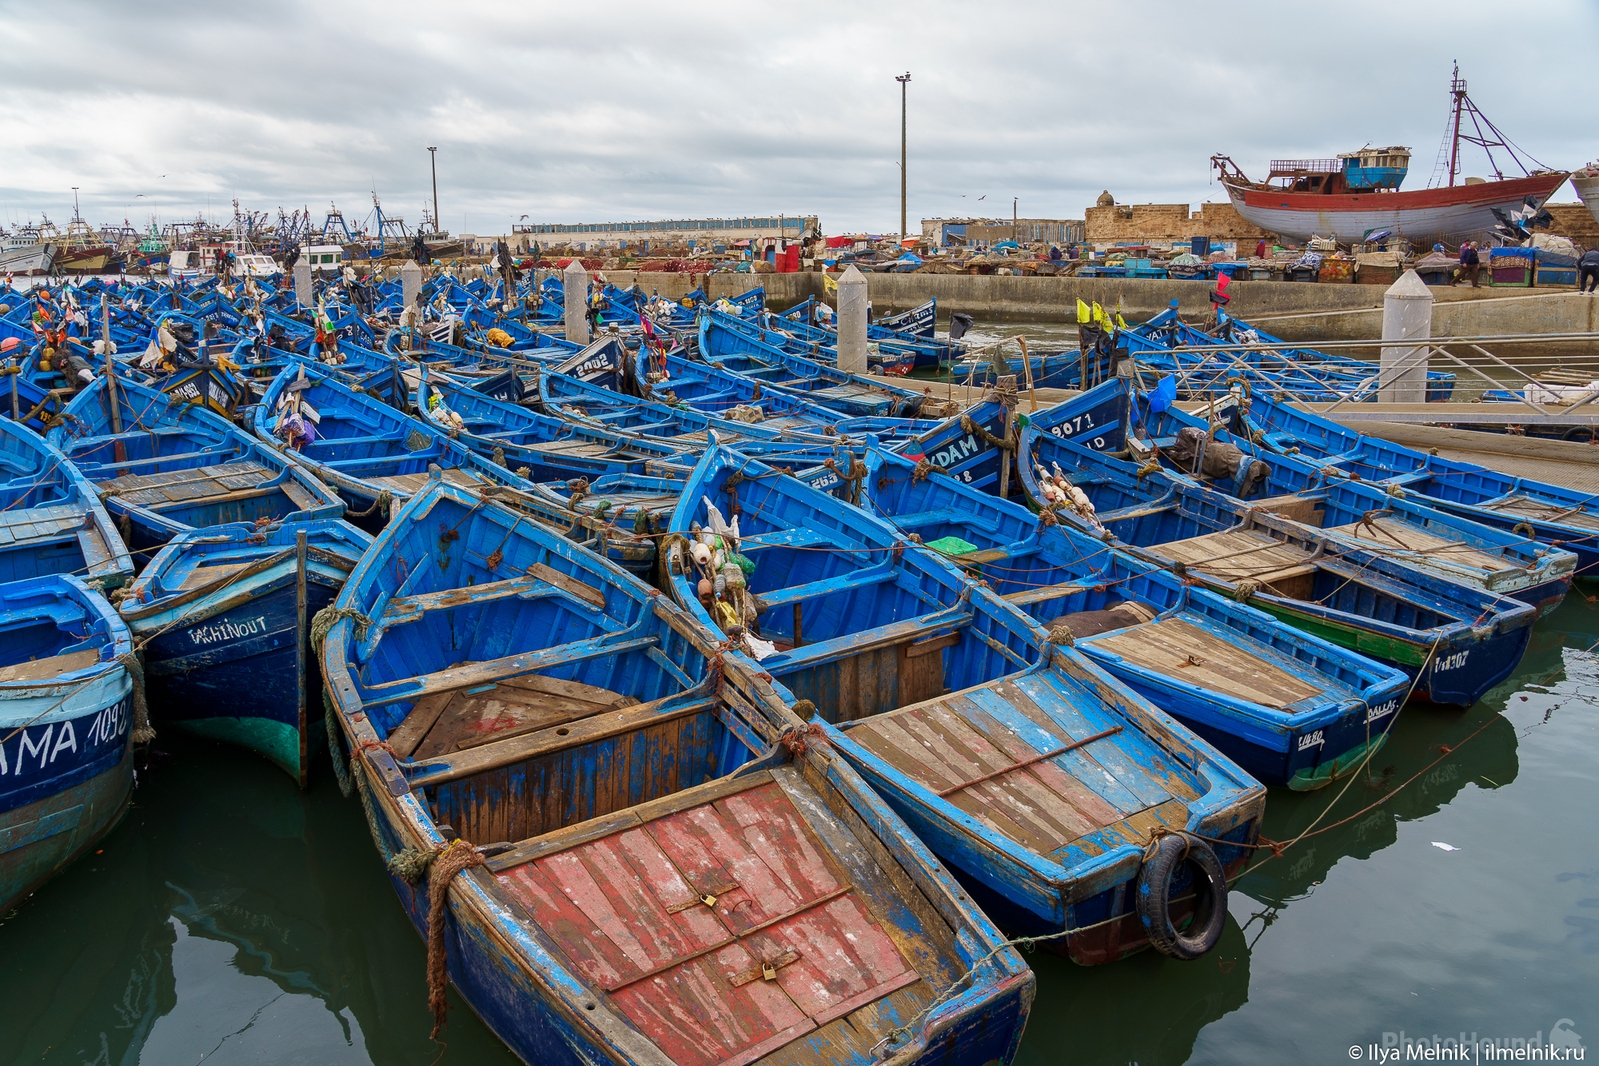 Image of Blue Boats of Essaouira by Ilya Melnik